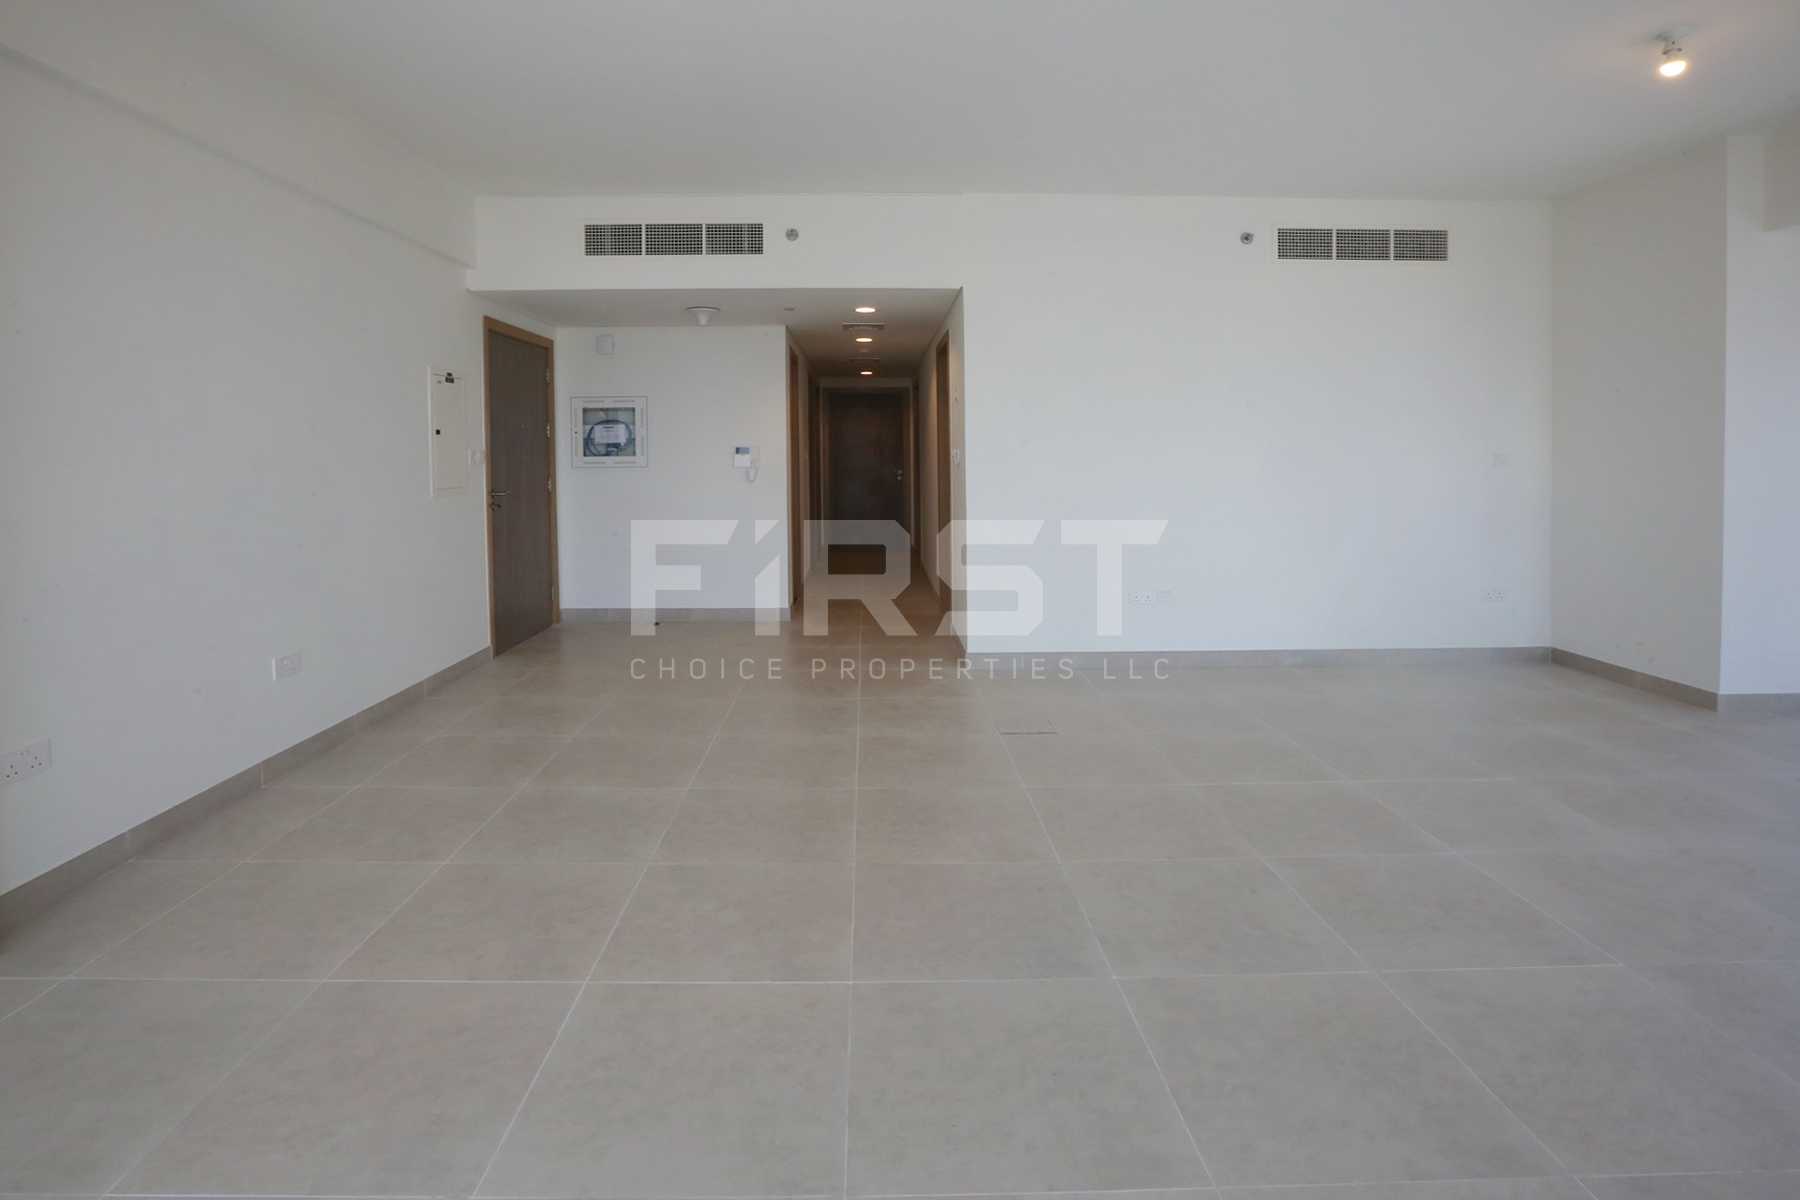 Internal Photo of 2 Bedroom Apartment in Soho Square Residences in Saadiyat Island Abu Dhabi UAE (25).jpg